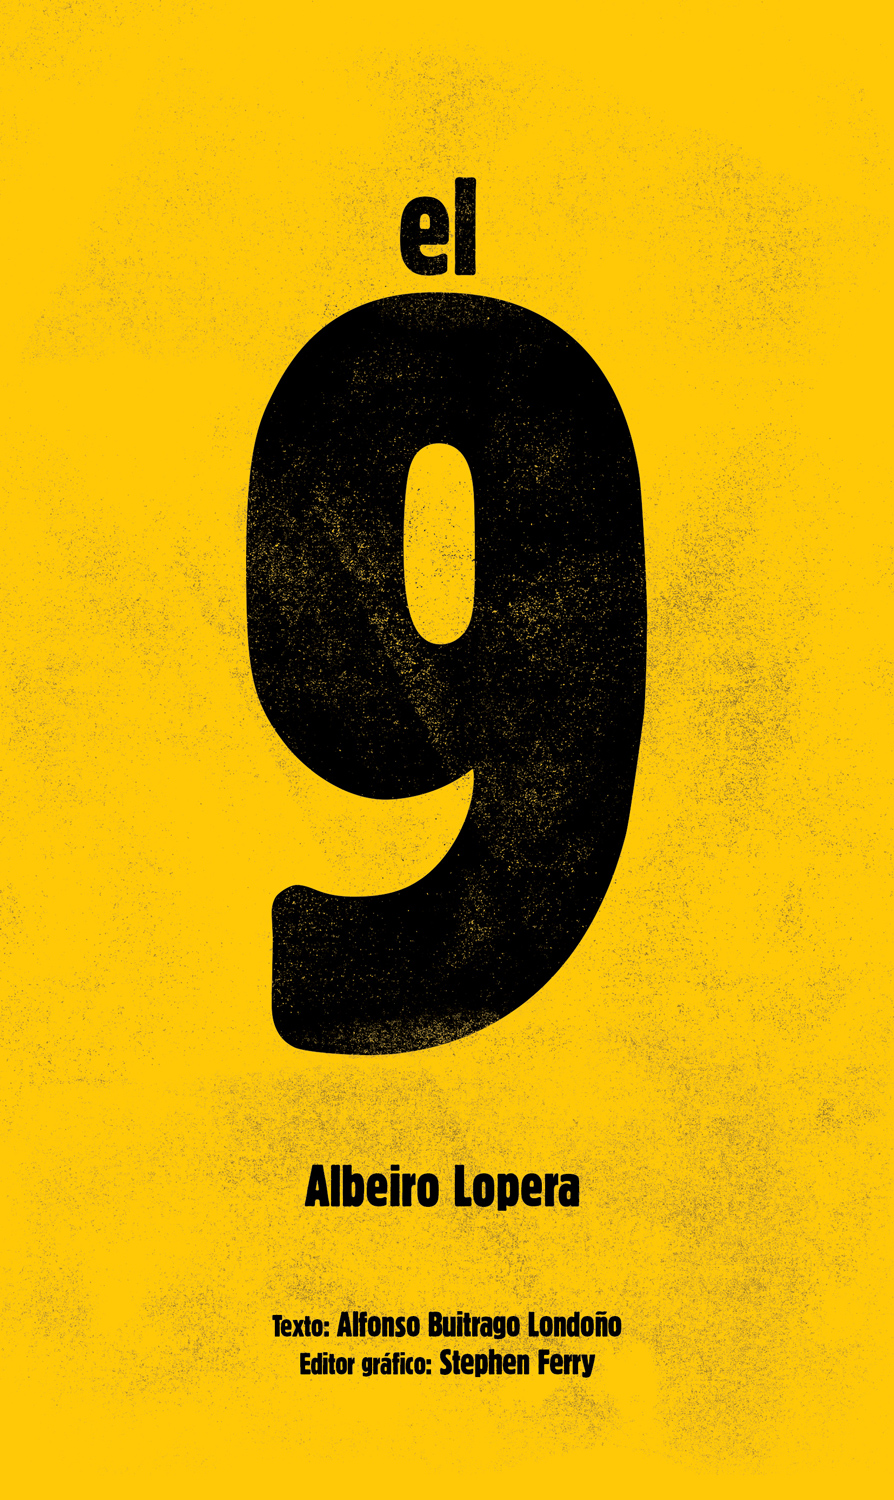 El 9, Albeiro Lopera